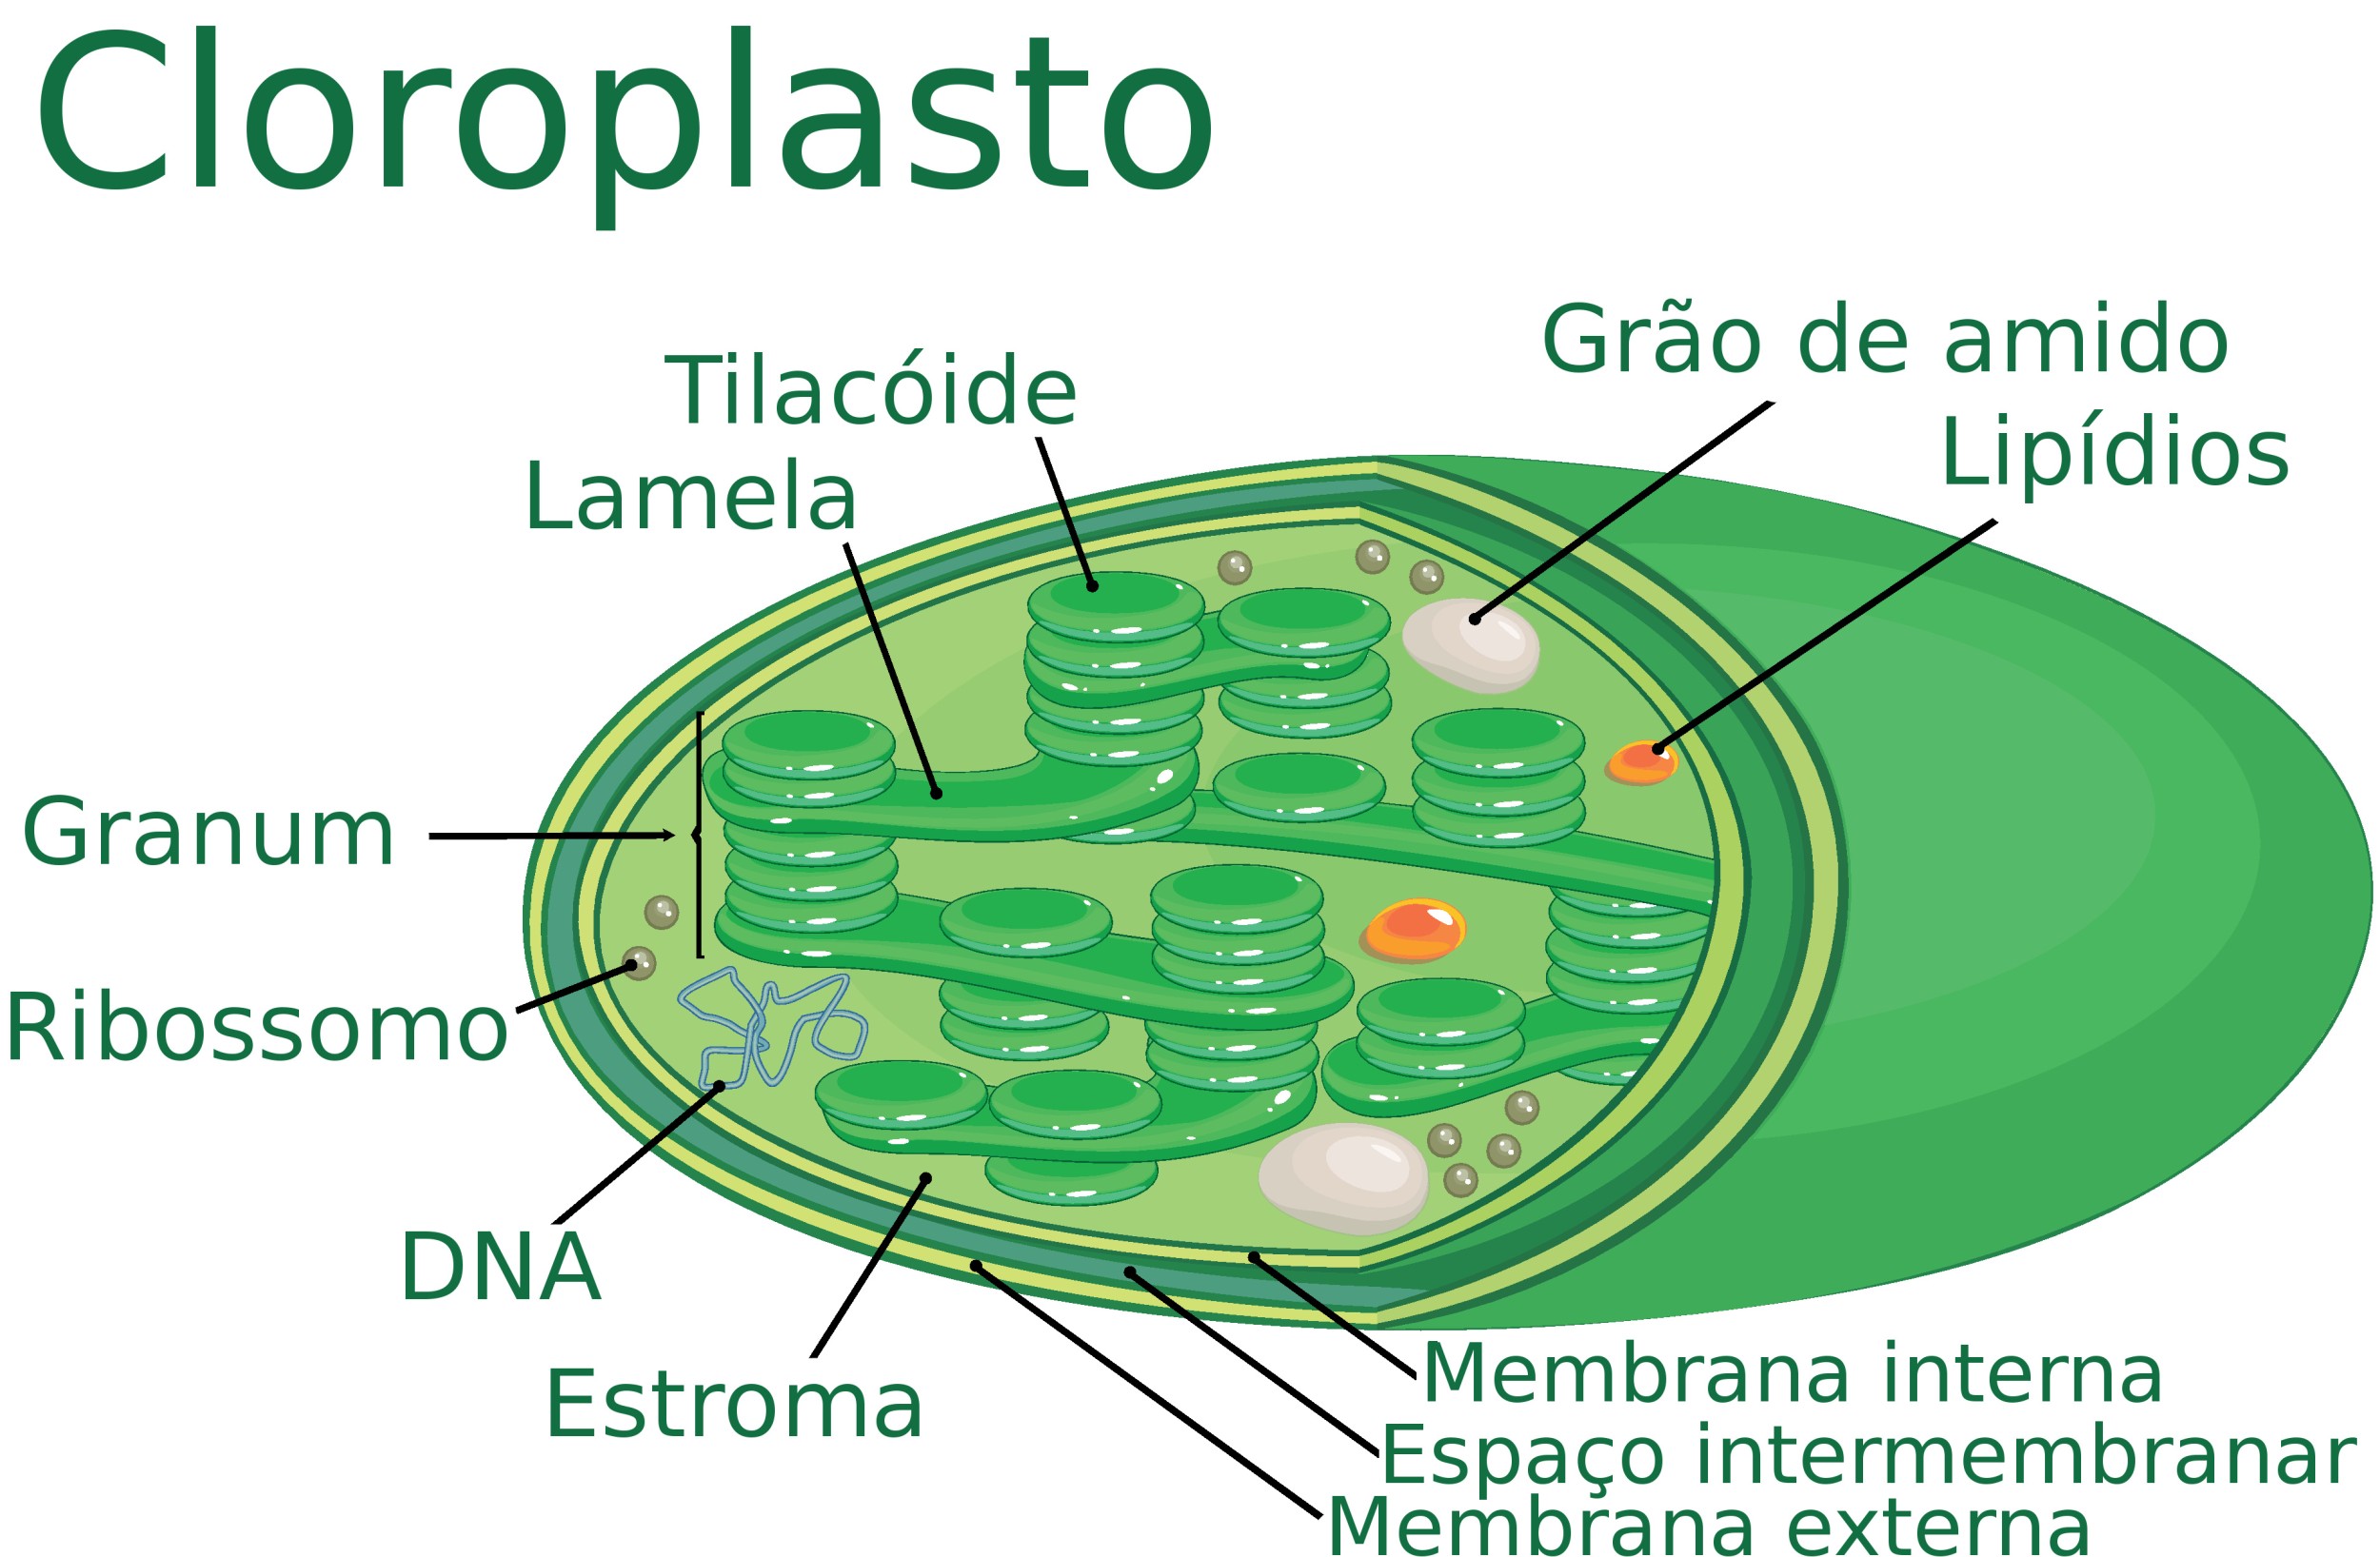 Resultado de imagen para grana cloroplasto"